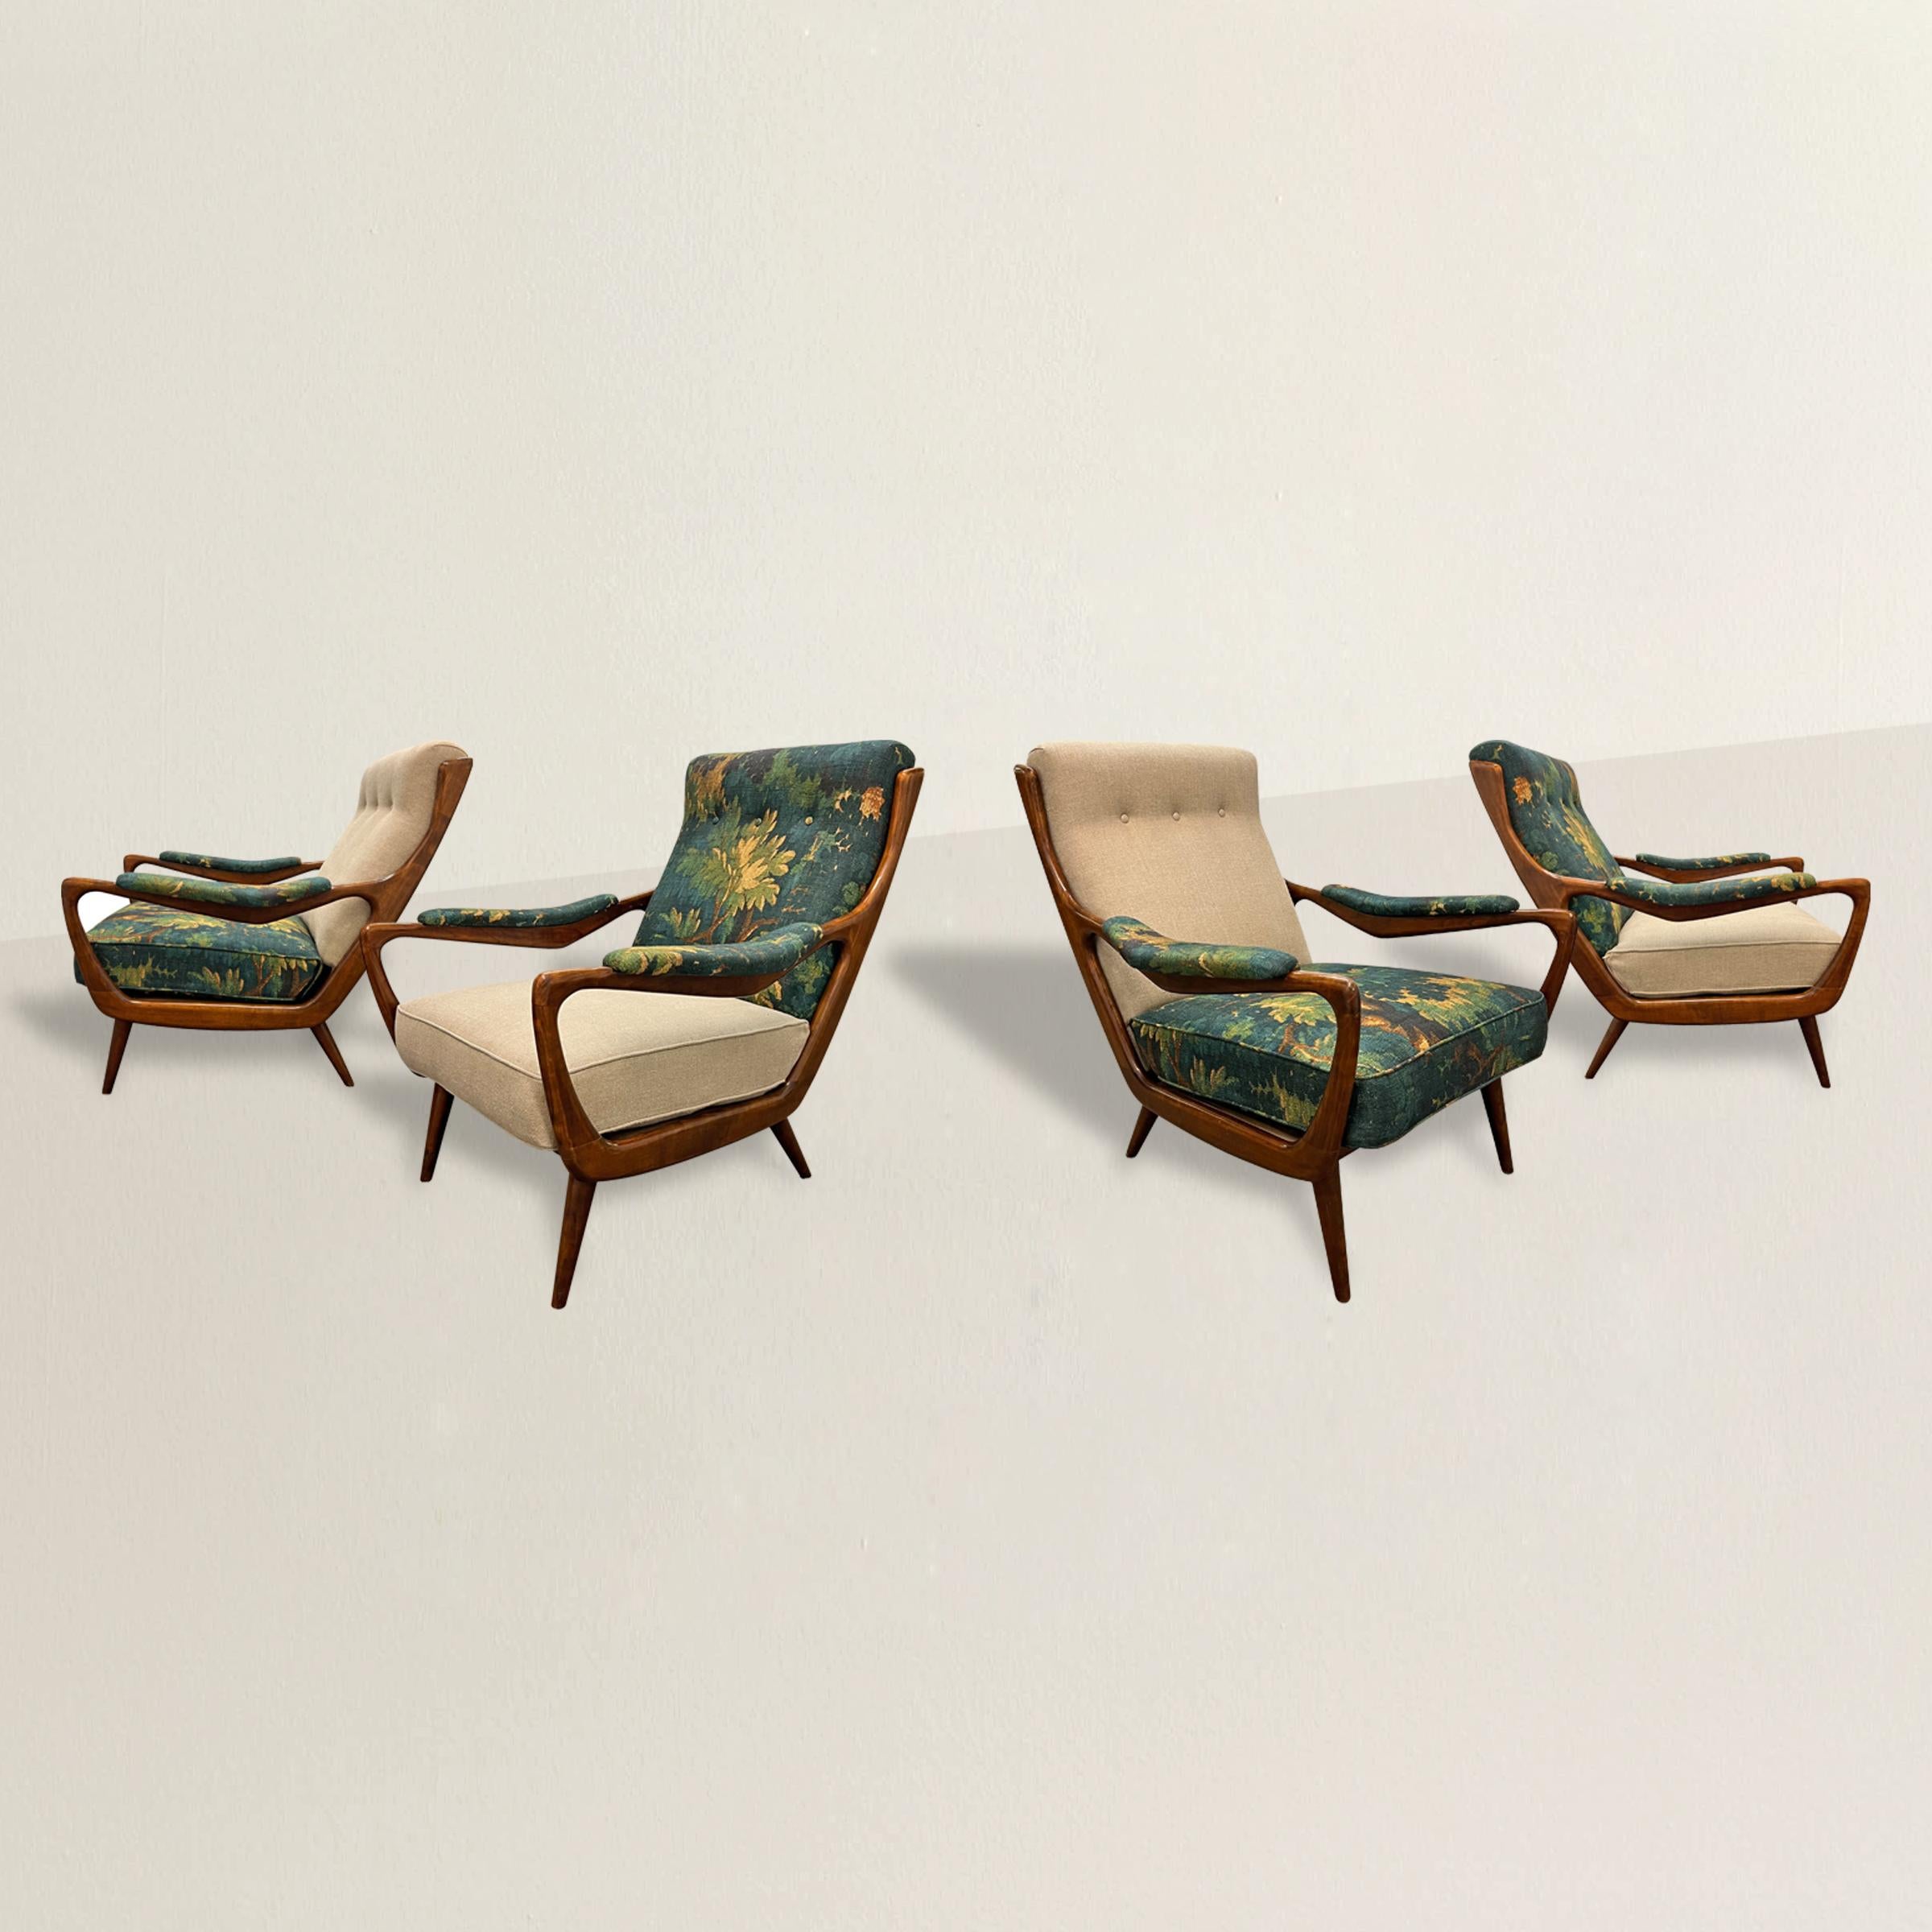 Dieses Set aus vier dänischen Loungesesseln im Stil der 1950er Jahre verleiht Ihrem Interieur einen Hauch von Eleganz und zeitgenössischem Stil. Die schicken Holzrahmen, Sinnbild des dänischen modernen Designs, stehen für die Betonung von